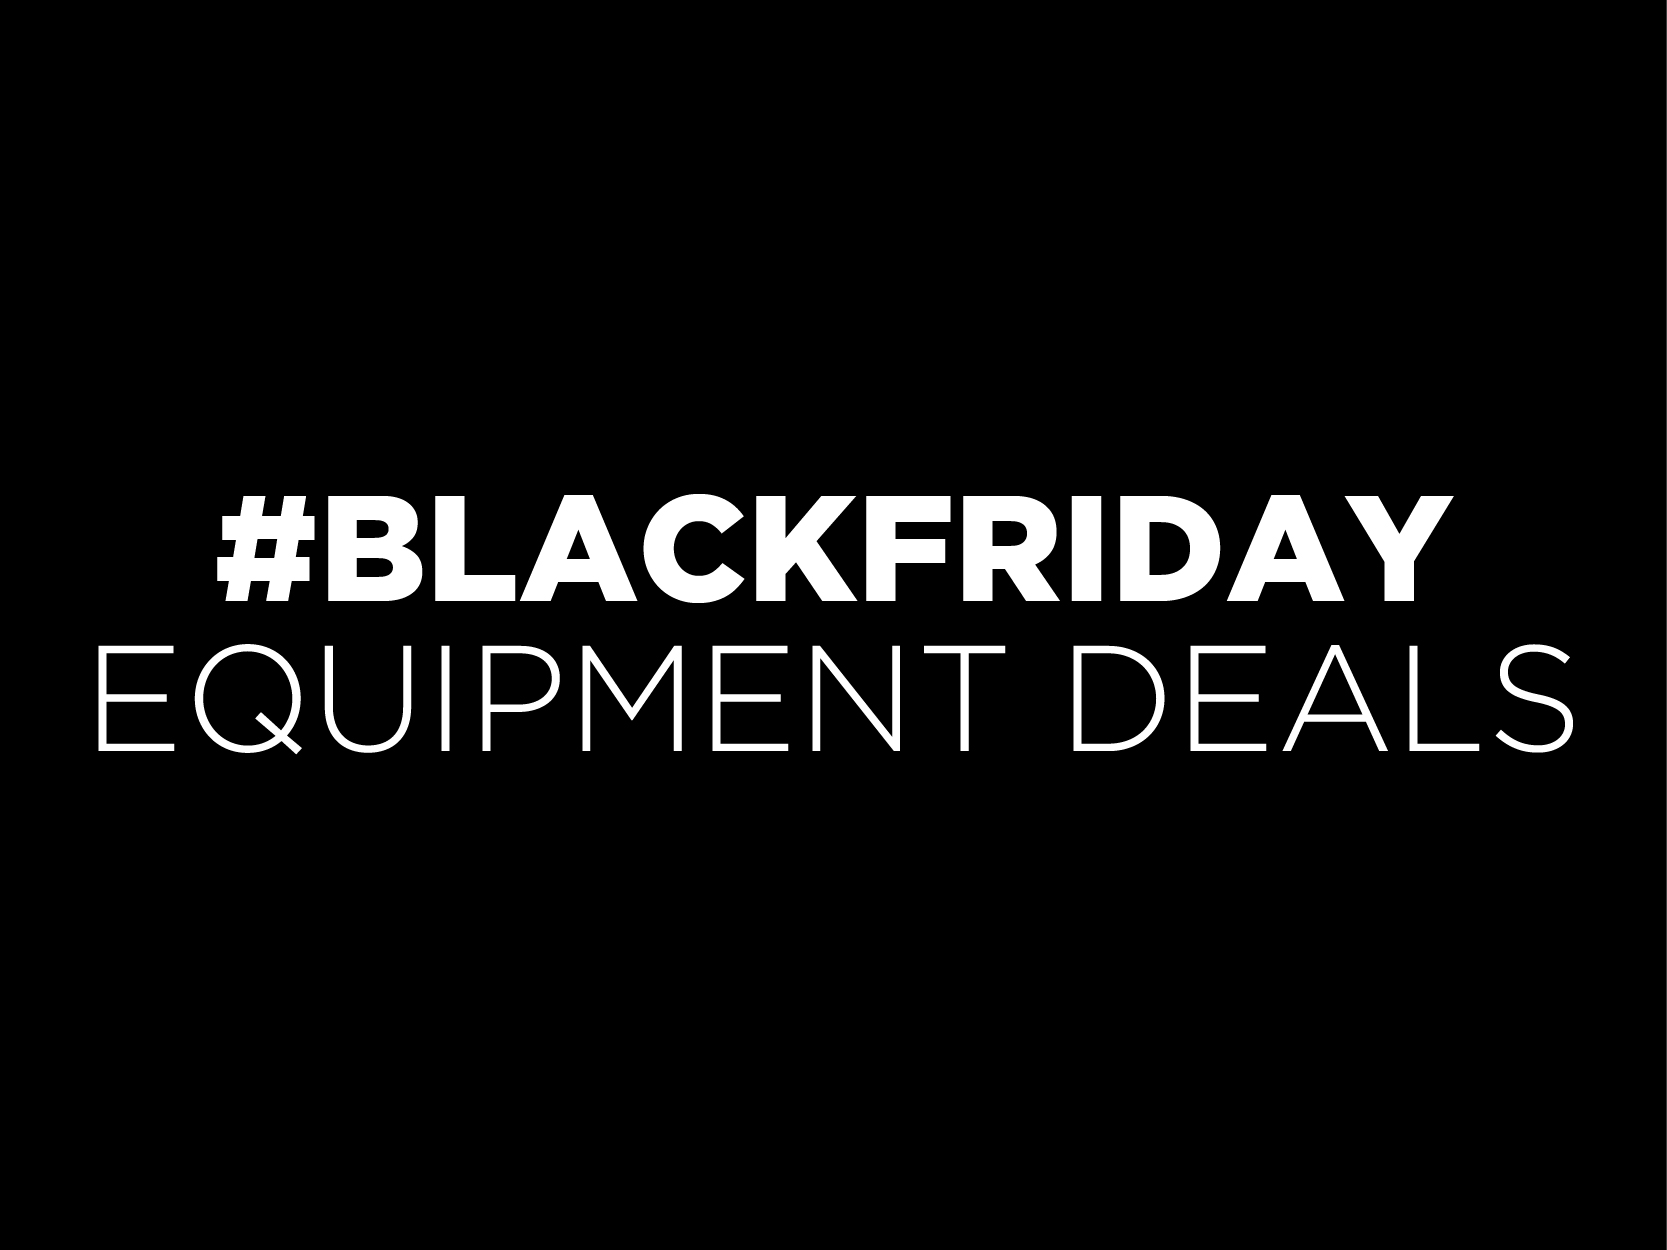 Black Friday Equipment Deals